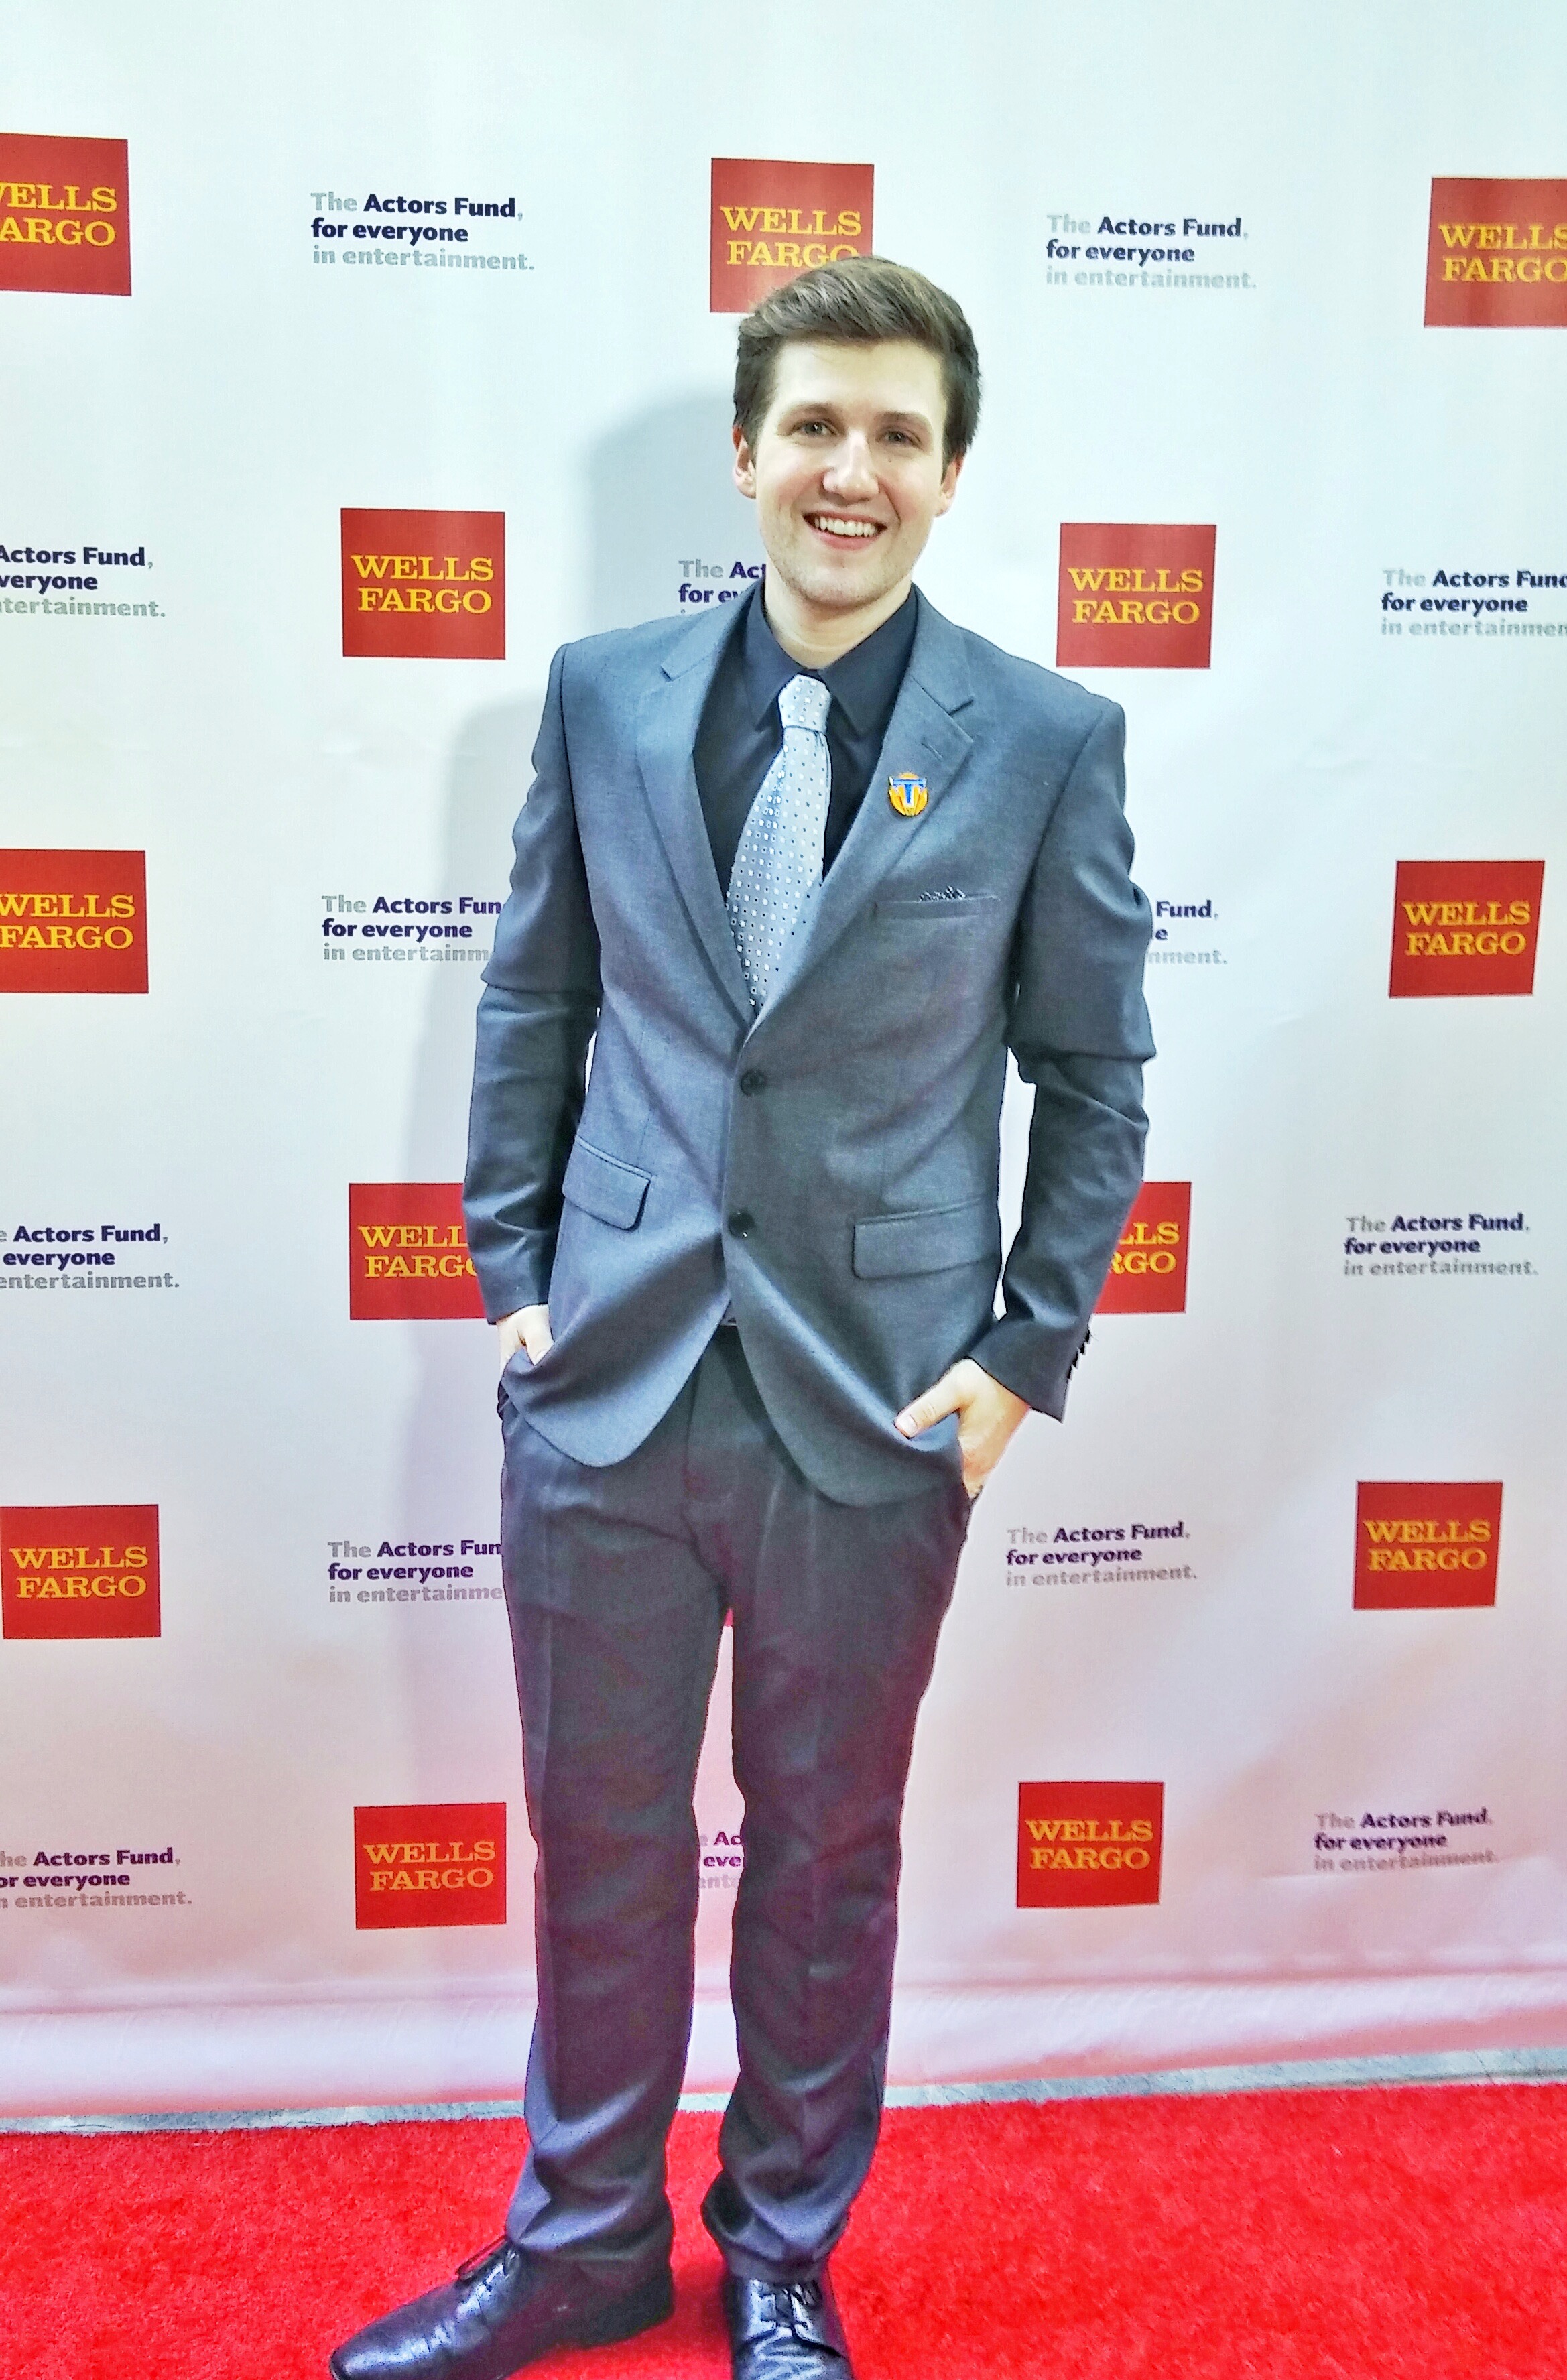 David at The 2015 Actor's Fund Tony Award Viewing Party